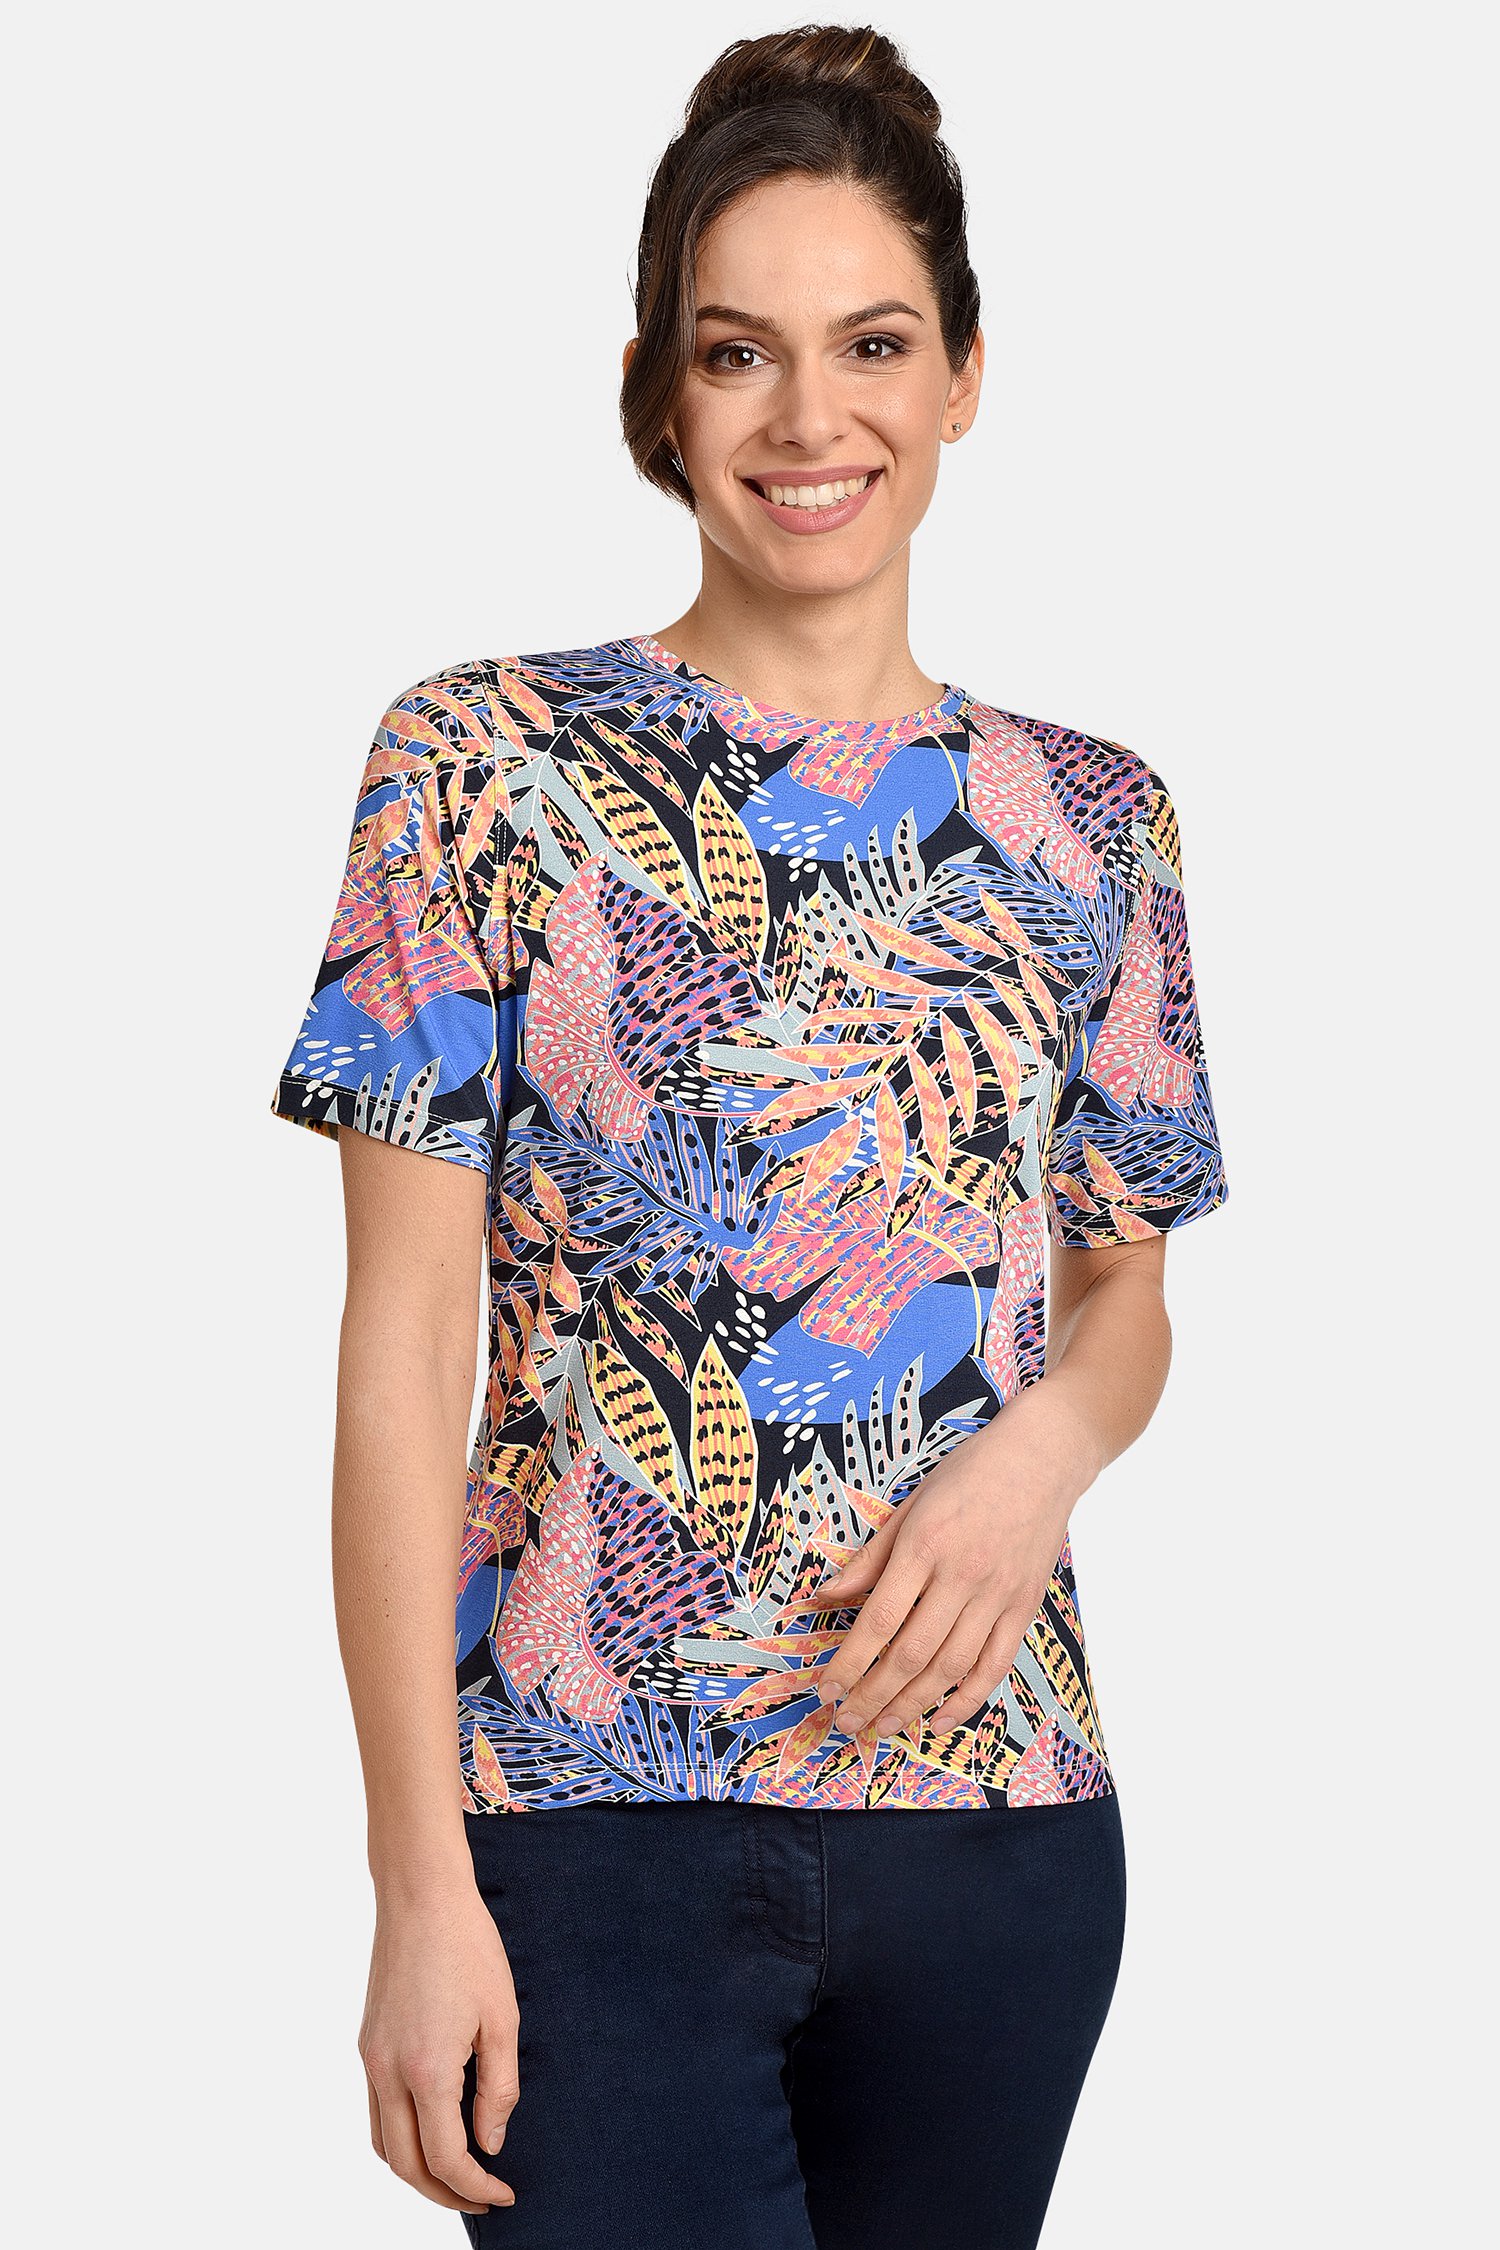 T-shirt met kleurrijke bladerprint van Bicalla voor Dames